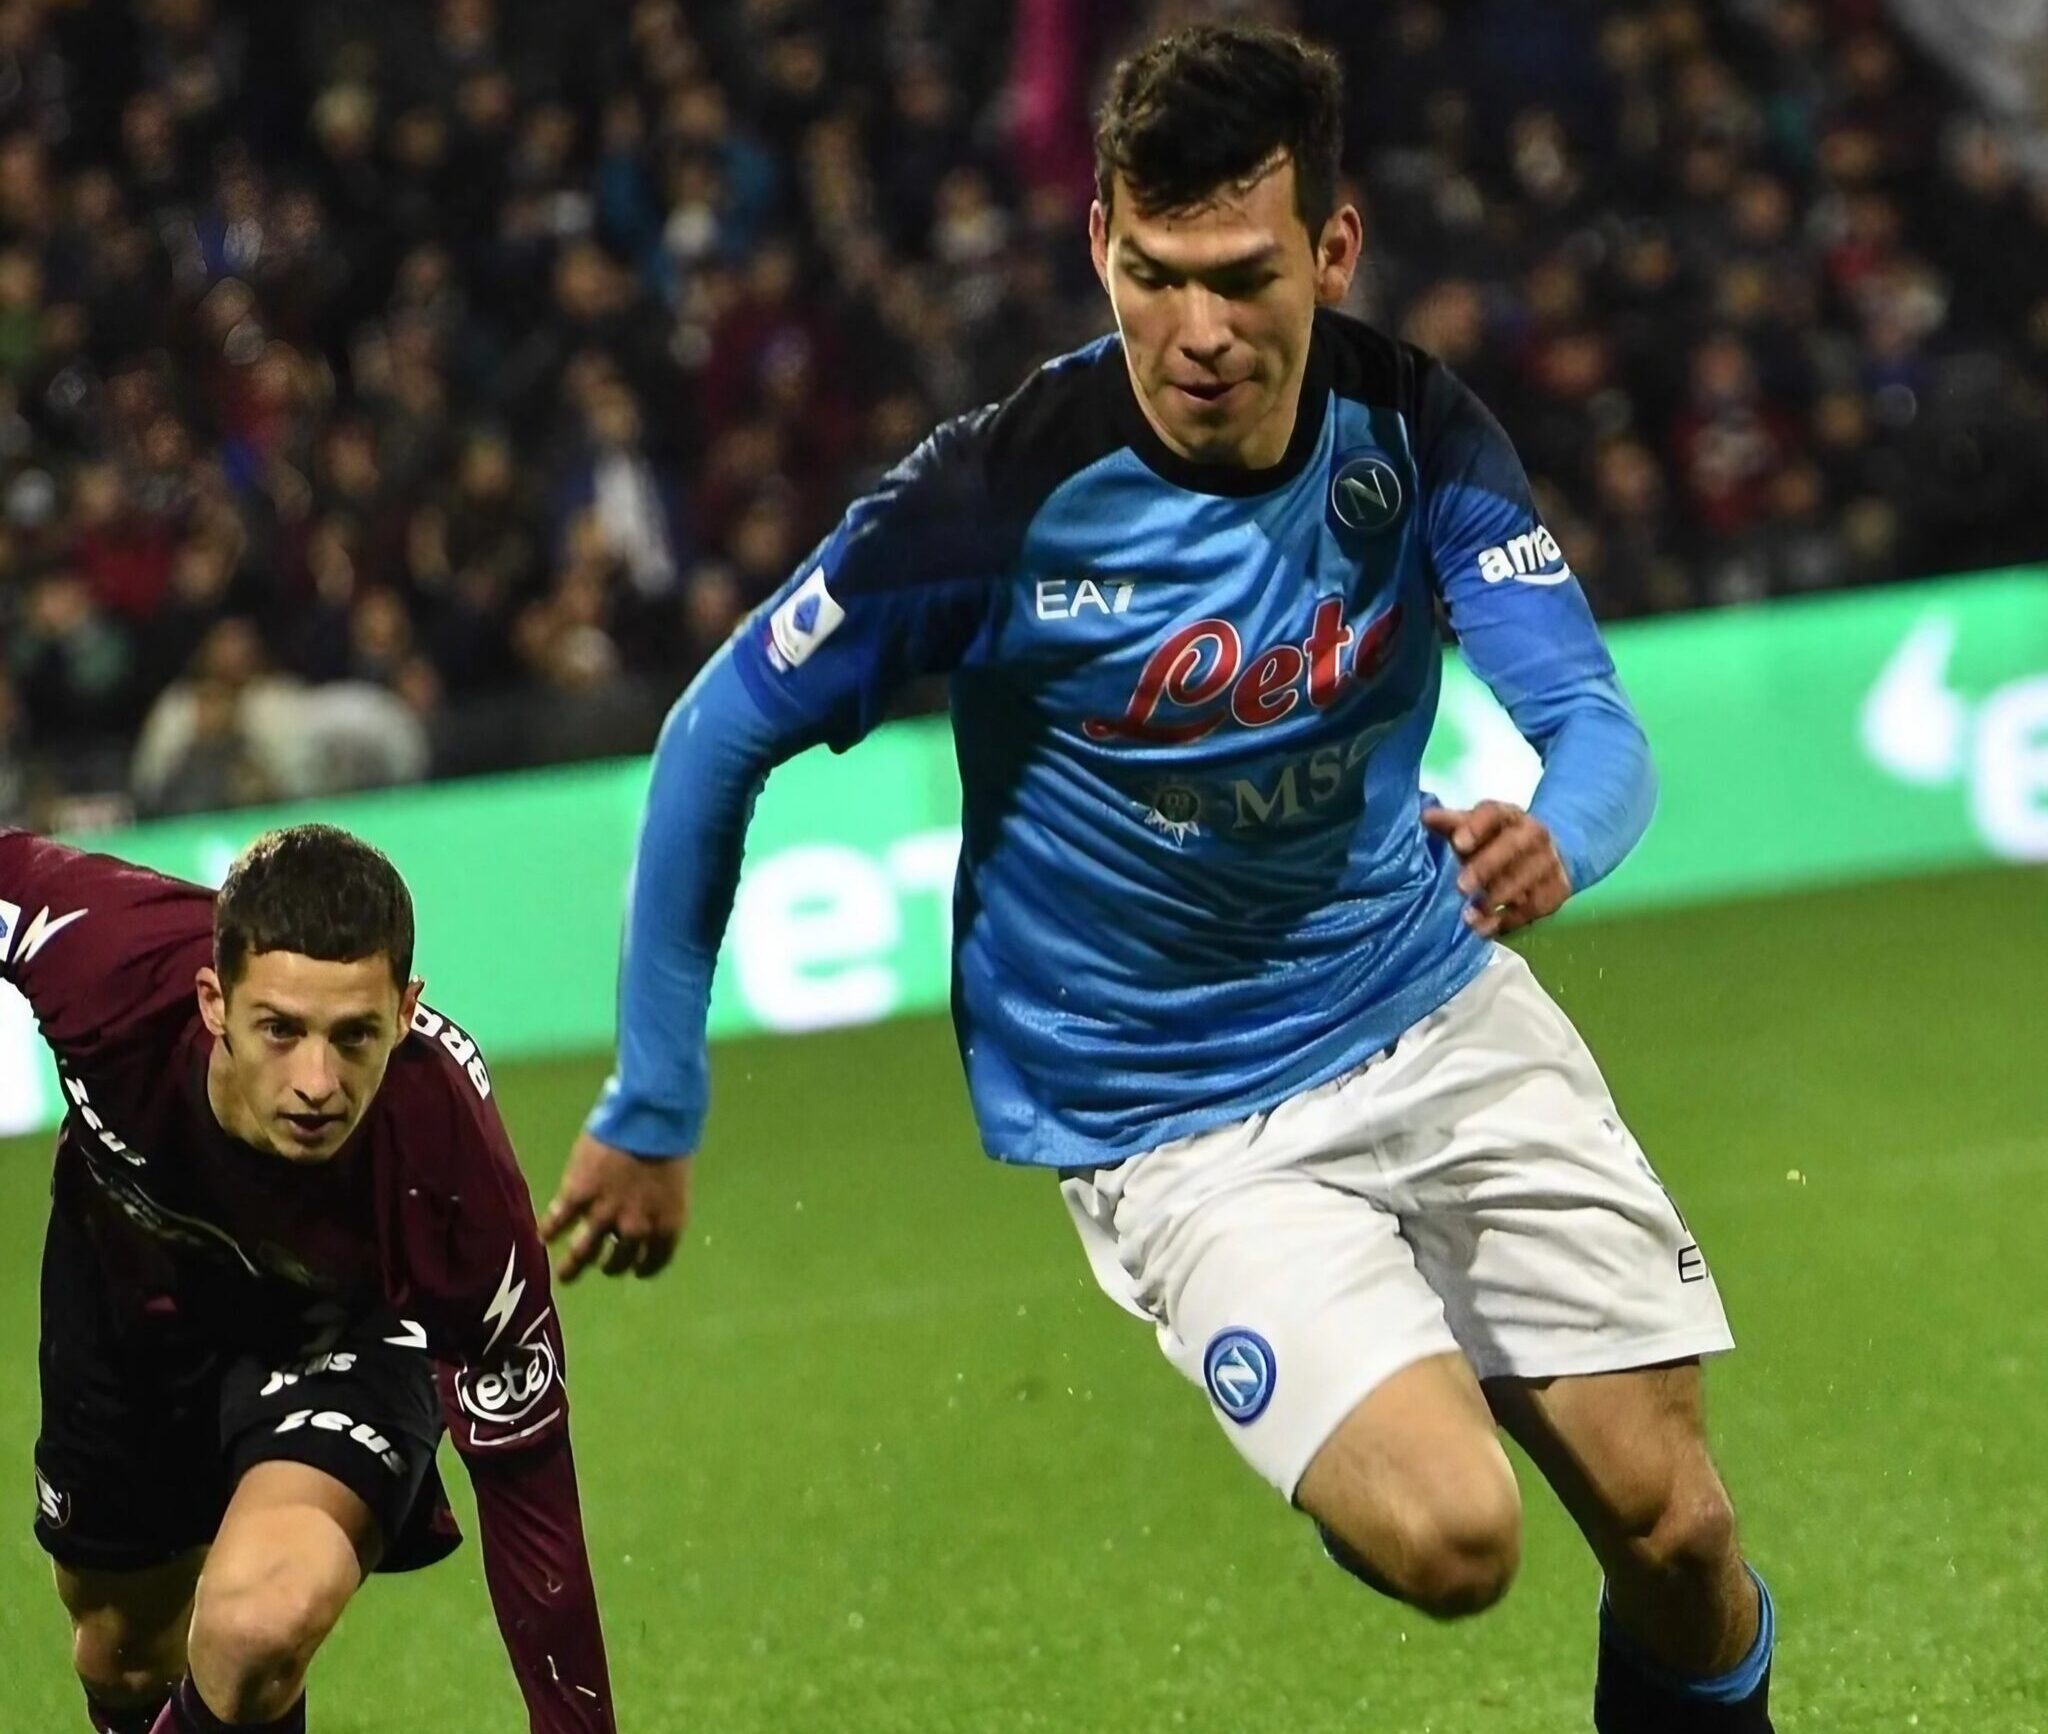 Lozano, Spieler des SSC Napoli, im Einsatz gegen einen Spieler von Salernitana